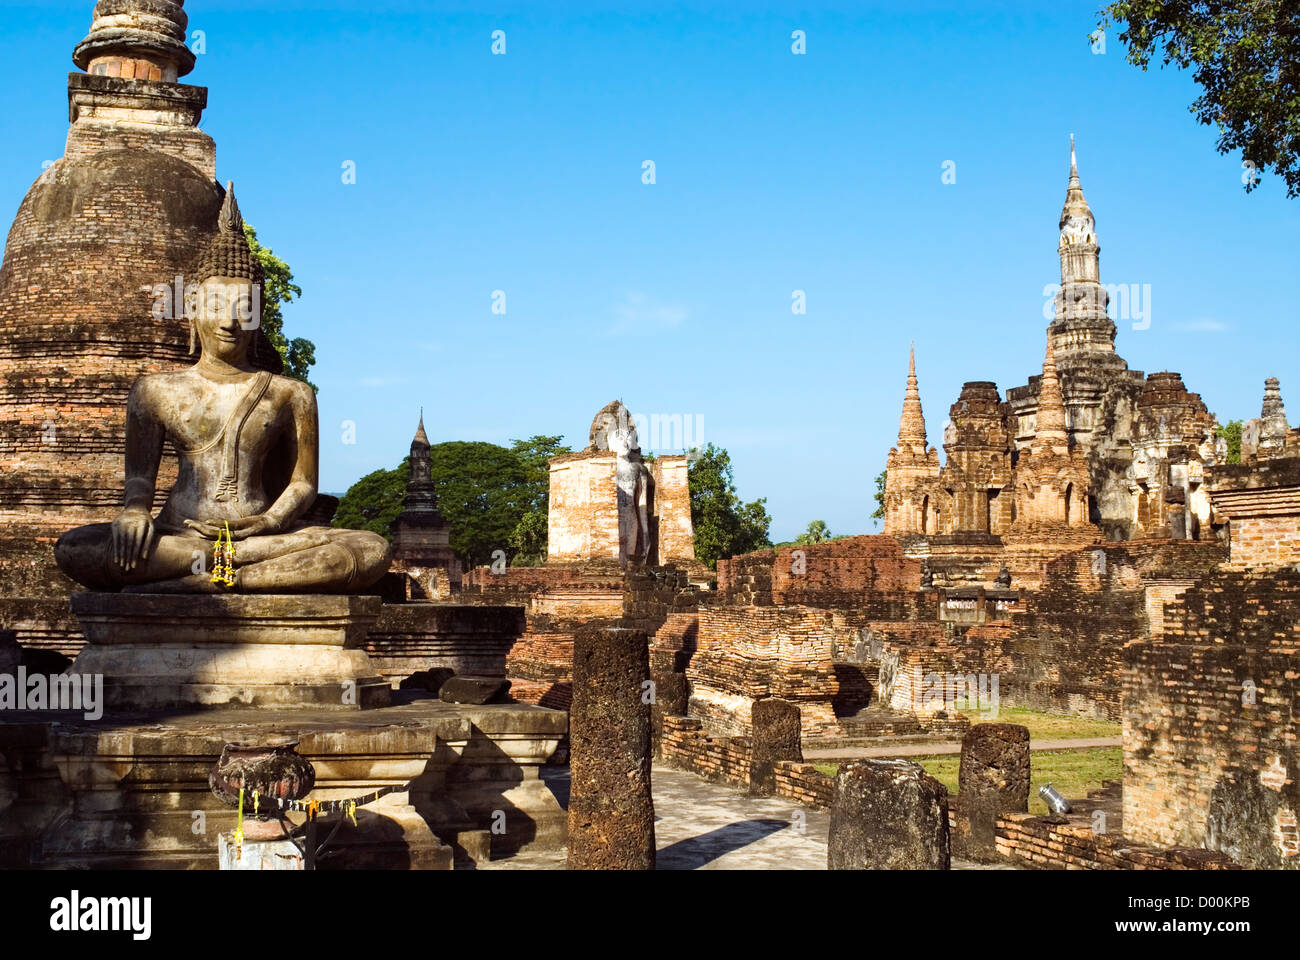 Wat Mahathat, Sukhothai historischen Park, Thailand | Wat Mahathat, Sukhothai Geschichtspark Sukhothai, Thailand Stockfoto